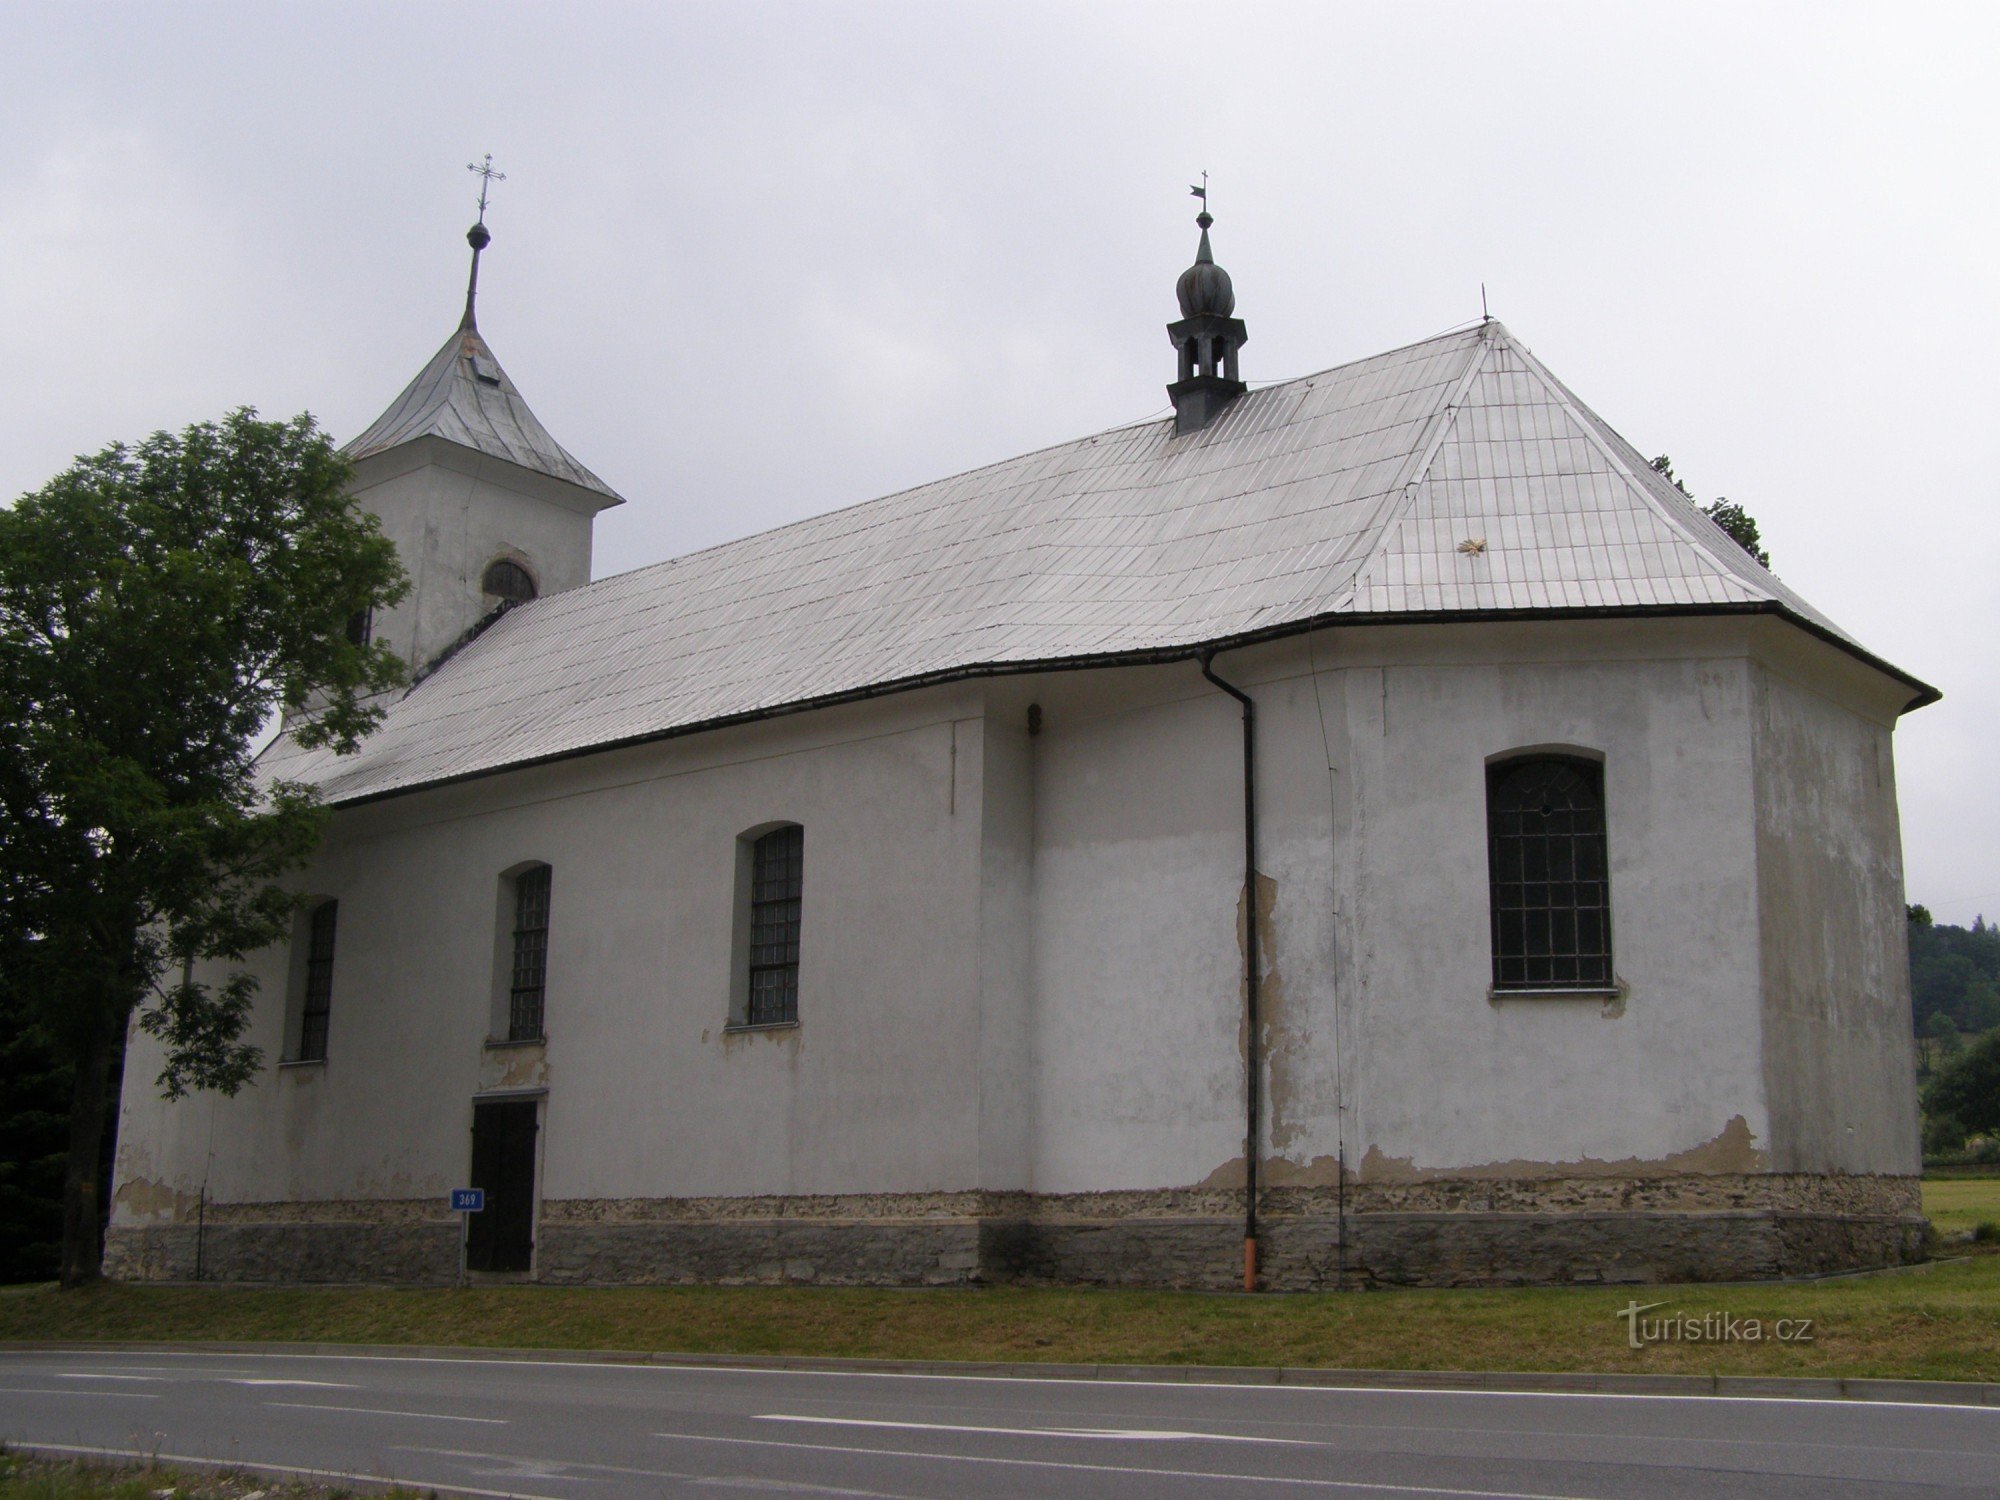 Ostružna - crkva Sveta tri kralja